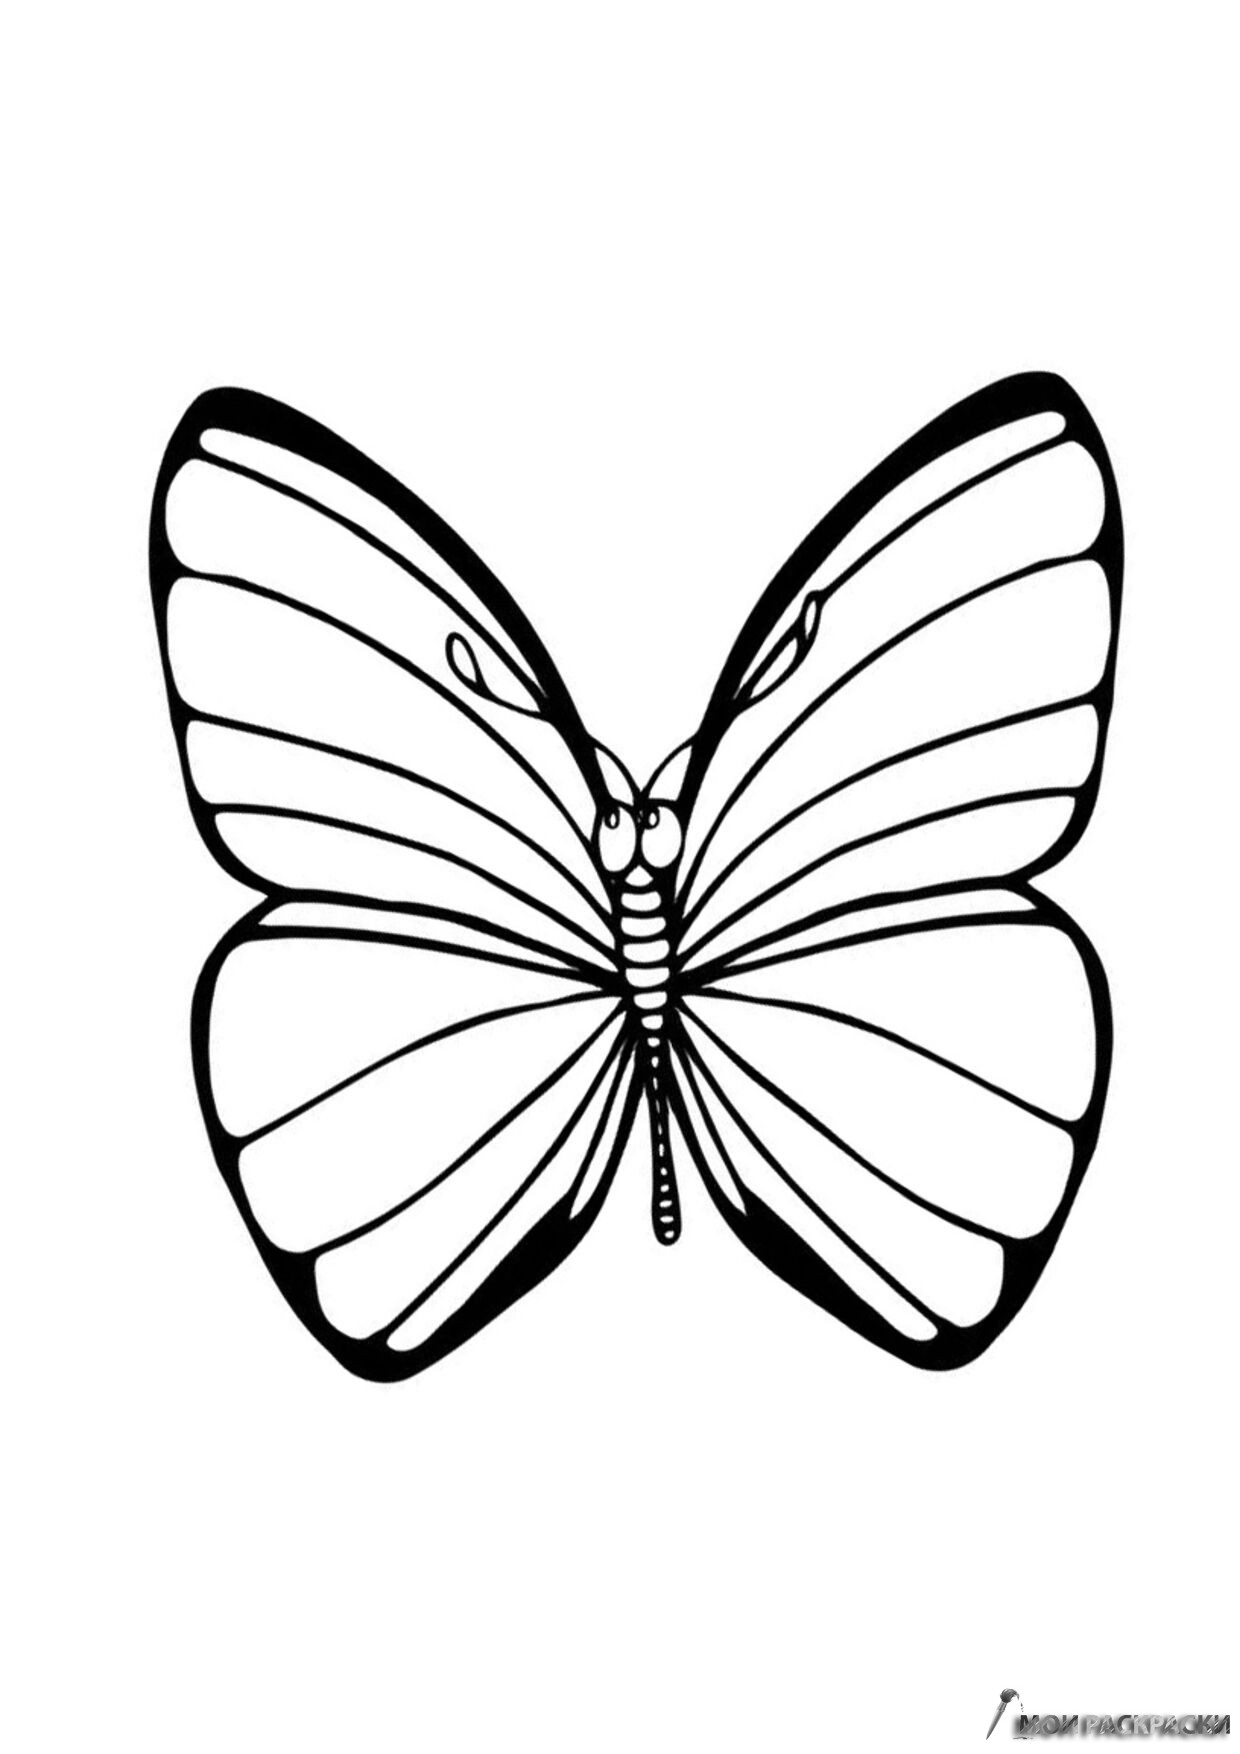 Раскраска 2 бабочки. Раскраска "бабочки". Бабочка раскраска для детей. Рисунок бабочки для раскрашивания. Бабочка раскраска для малышей.